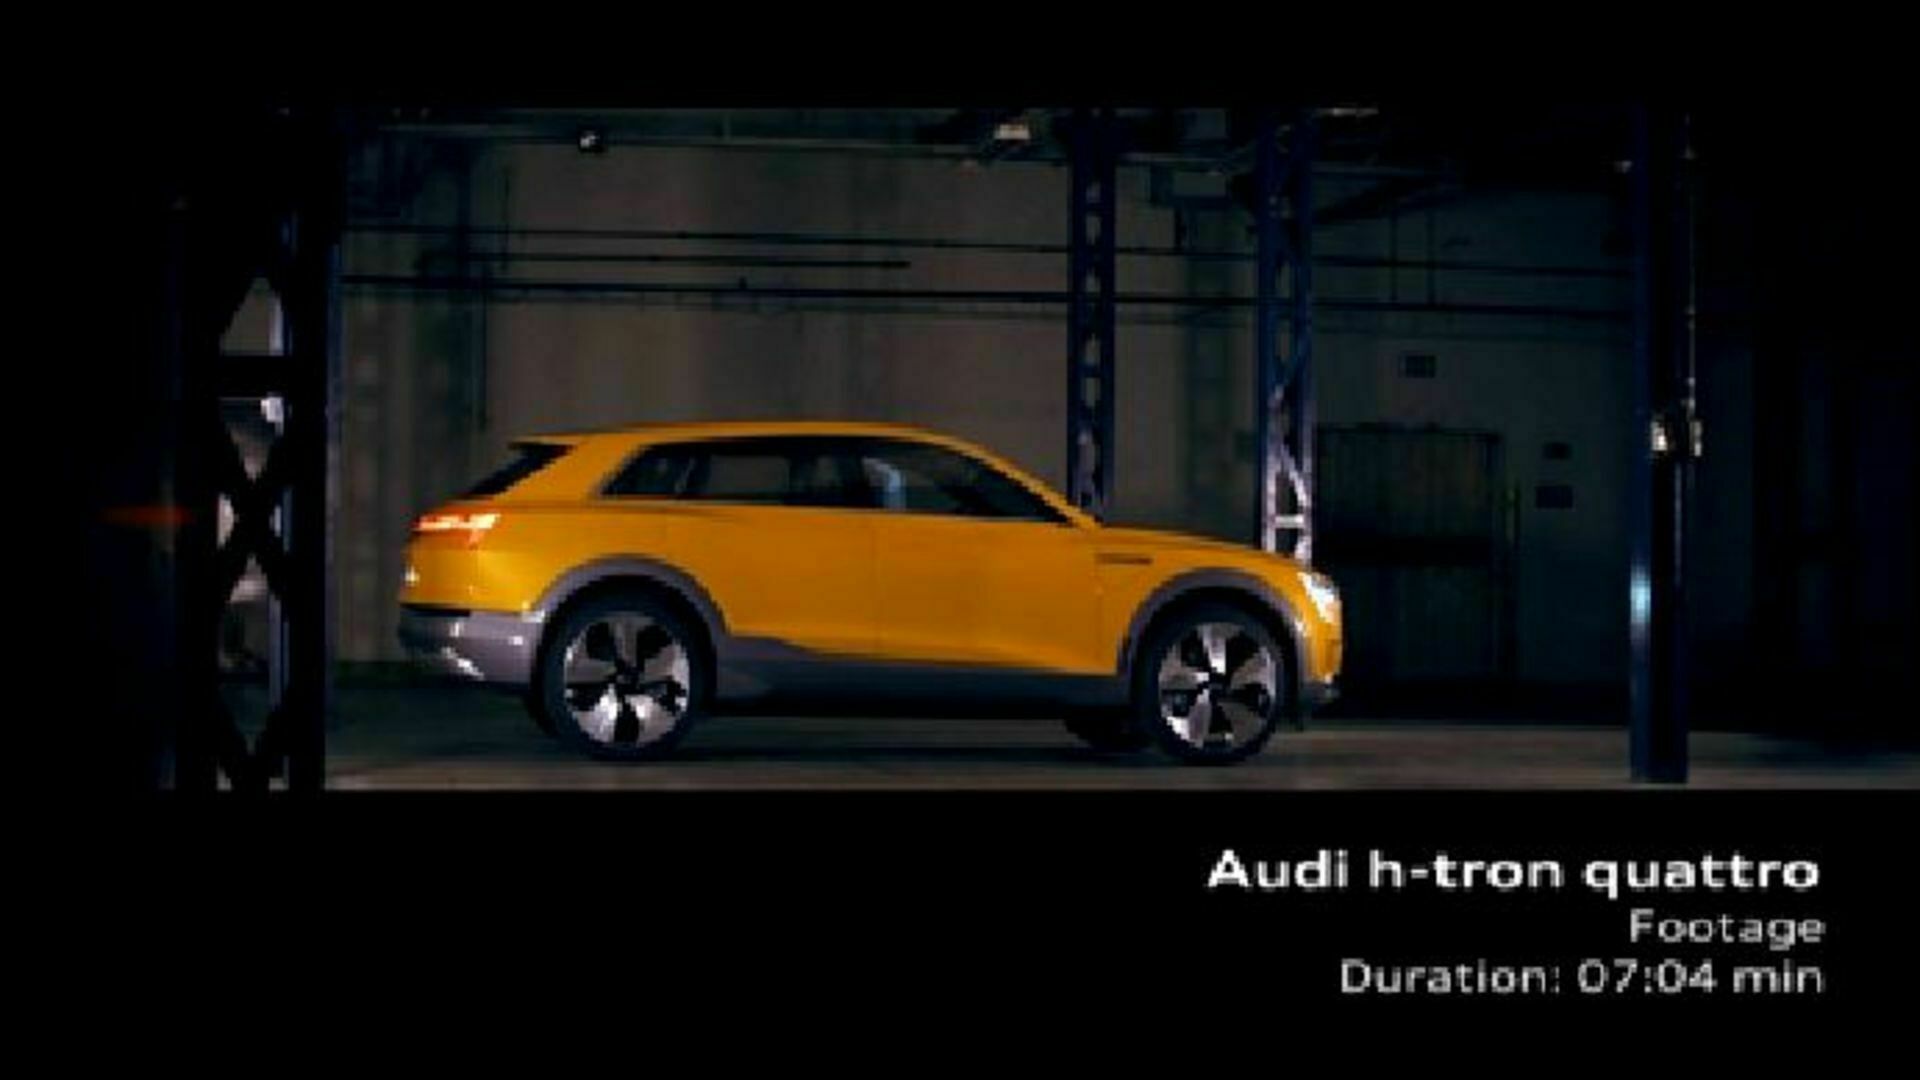 Audi h-tron quattro concept Footage 2016 AMTV DE